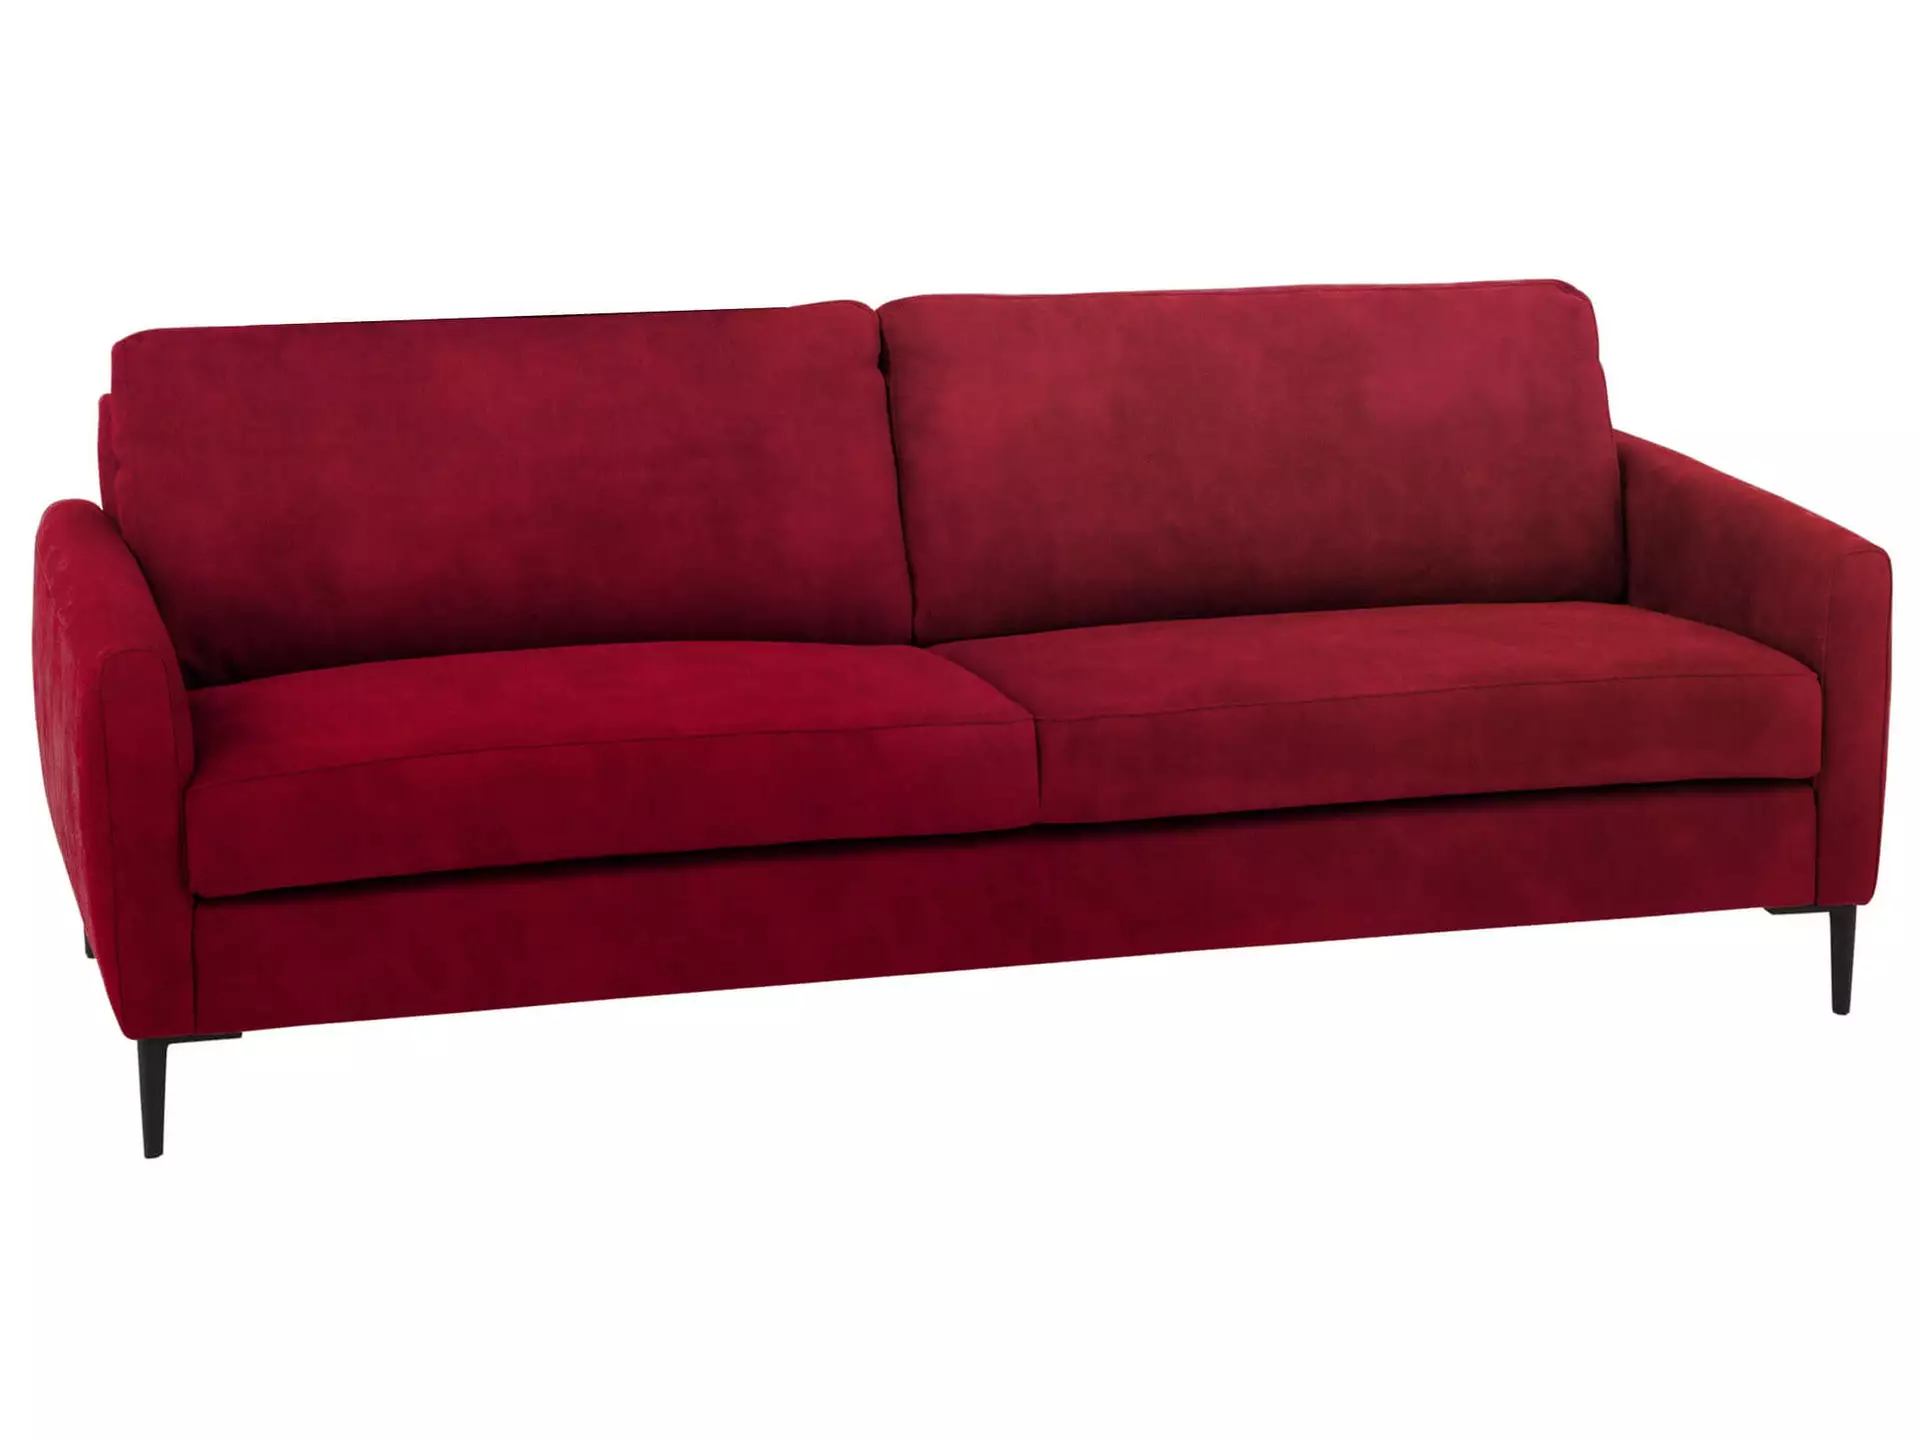 Sofa Antonio Basic B: 196 cm Schillig Willi / Farbe: Ruby Red / Material: Leder Basic